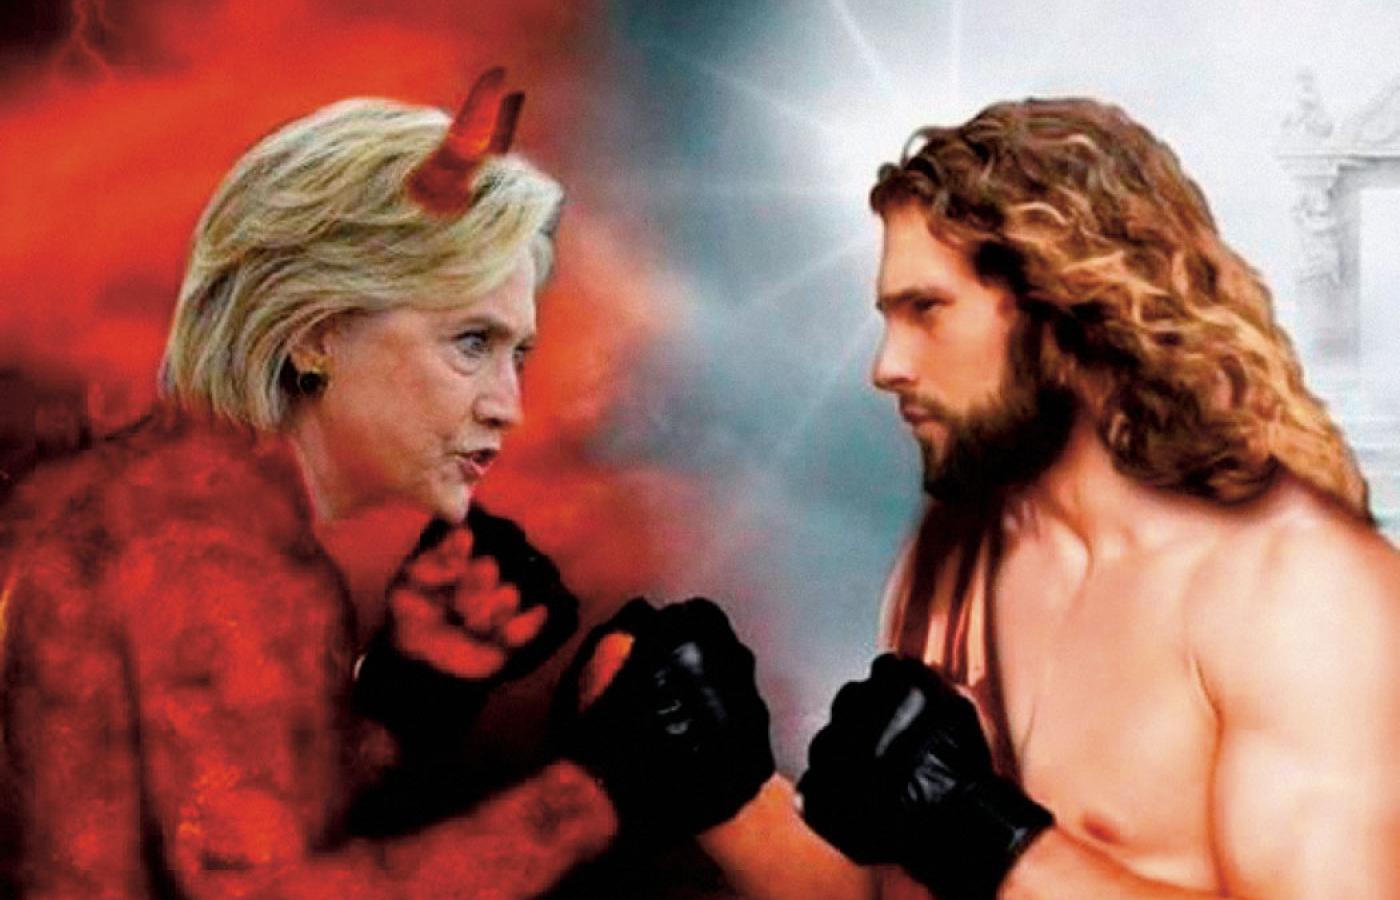 Mem, przedstawiający walkę na pięści między Jezusem a Hillary Clinton